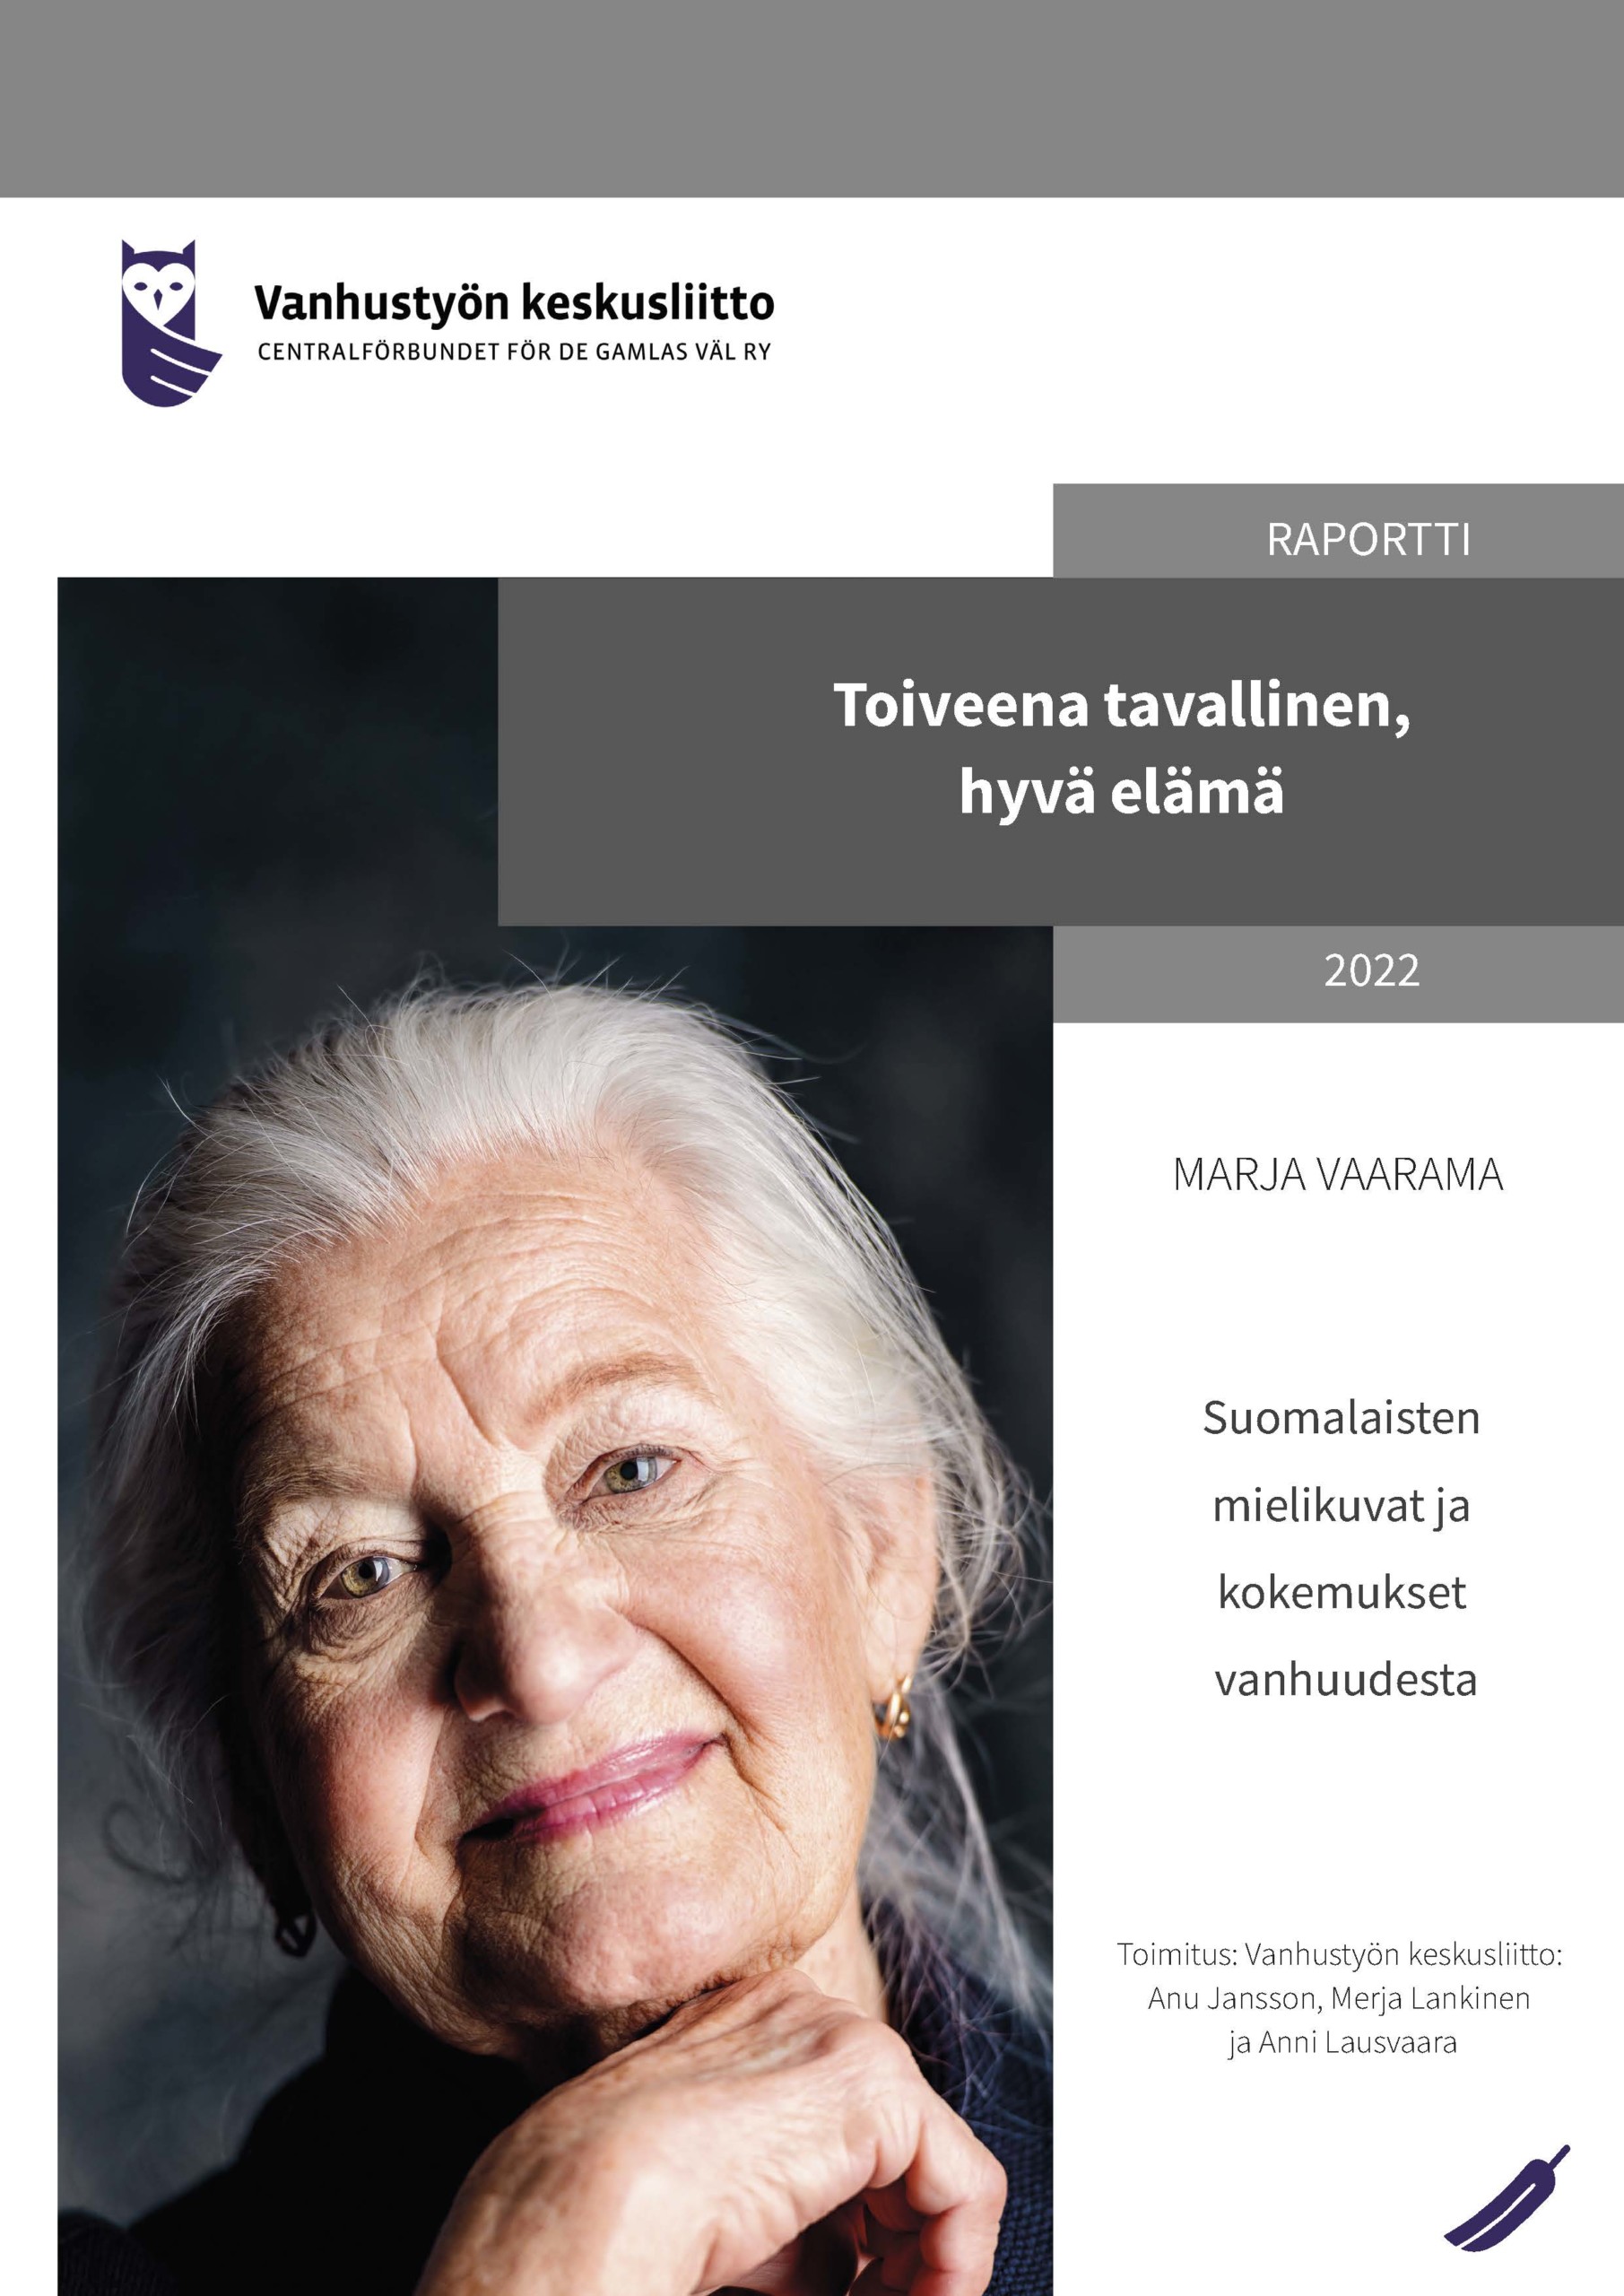 Toiveena tavallinen, hyvä elämä - suomalaisten mielikuvat ja kokemukset vanhuudesta - Marja Vaaraman raportti.